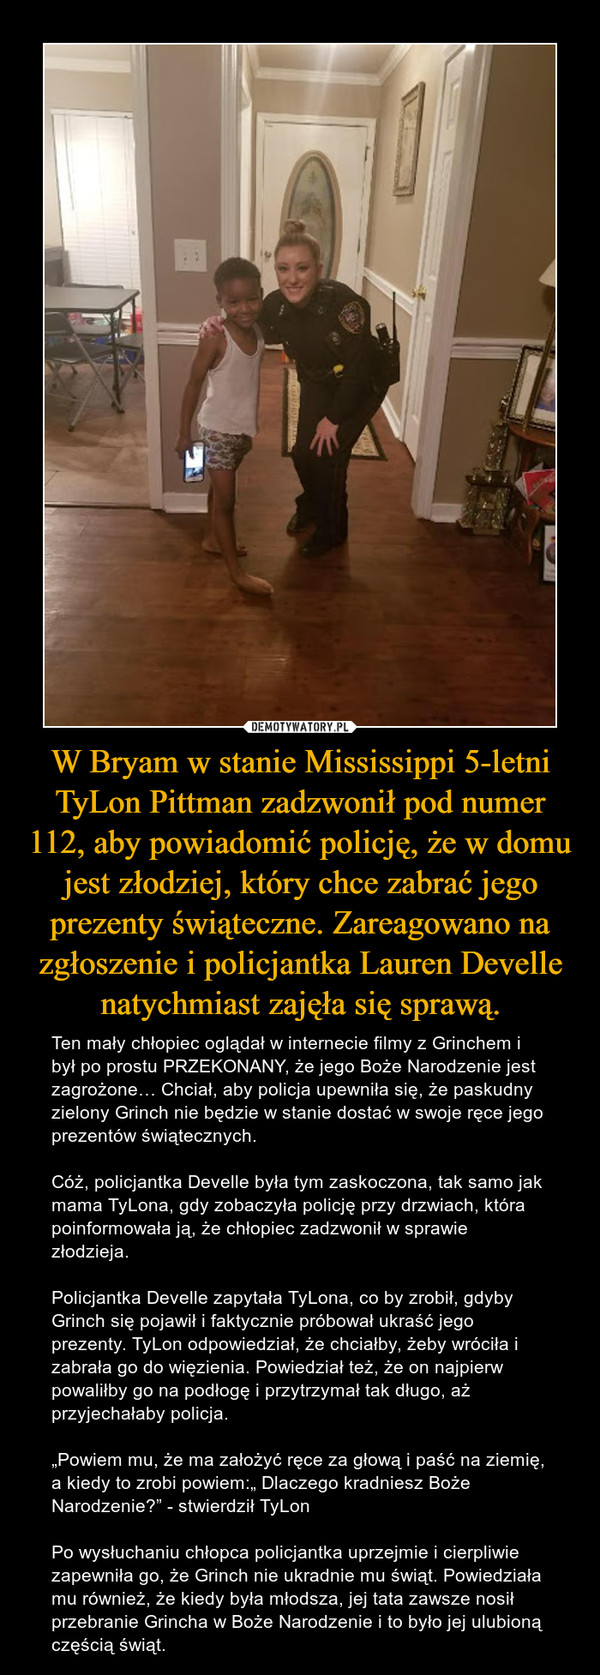 W Bryam w stanie Mississippi 5-letni TyLon Pittman zadzwonił pod numer 112, aby powiadomić policję, że w domu jest złodziej, który chce zabrać jego prezenty świąteczne. Zareagowano na zgłoszenie i policjantka Lauren Develle natychmiast zajęła się sprawą.